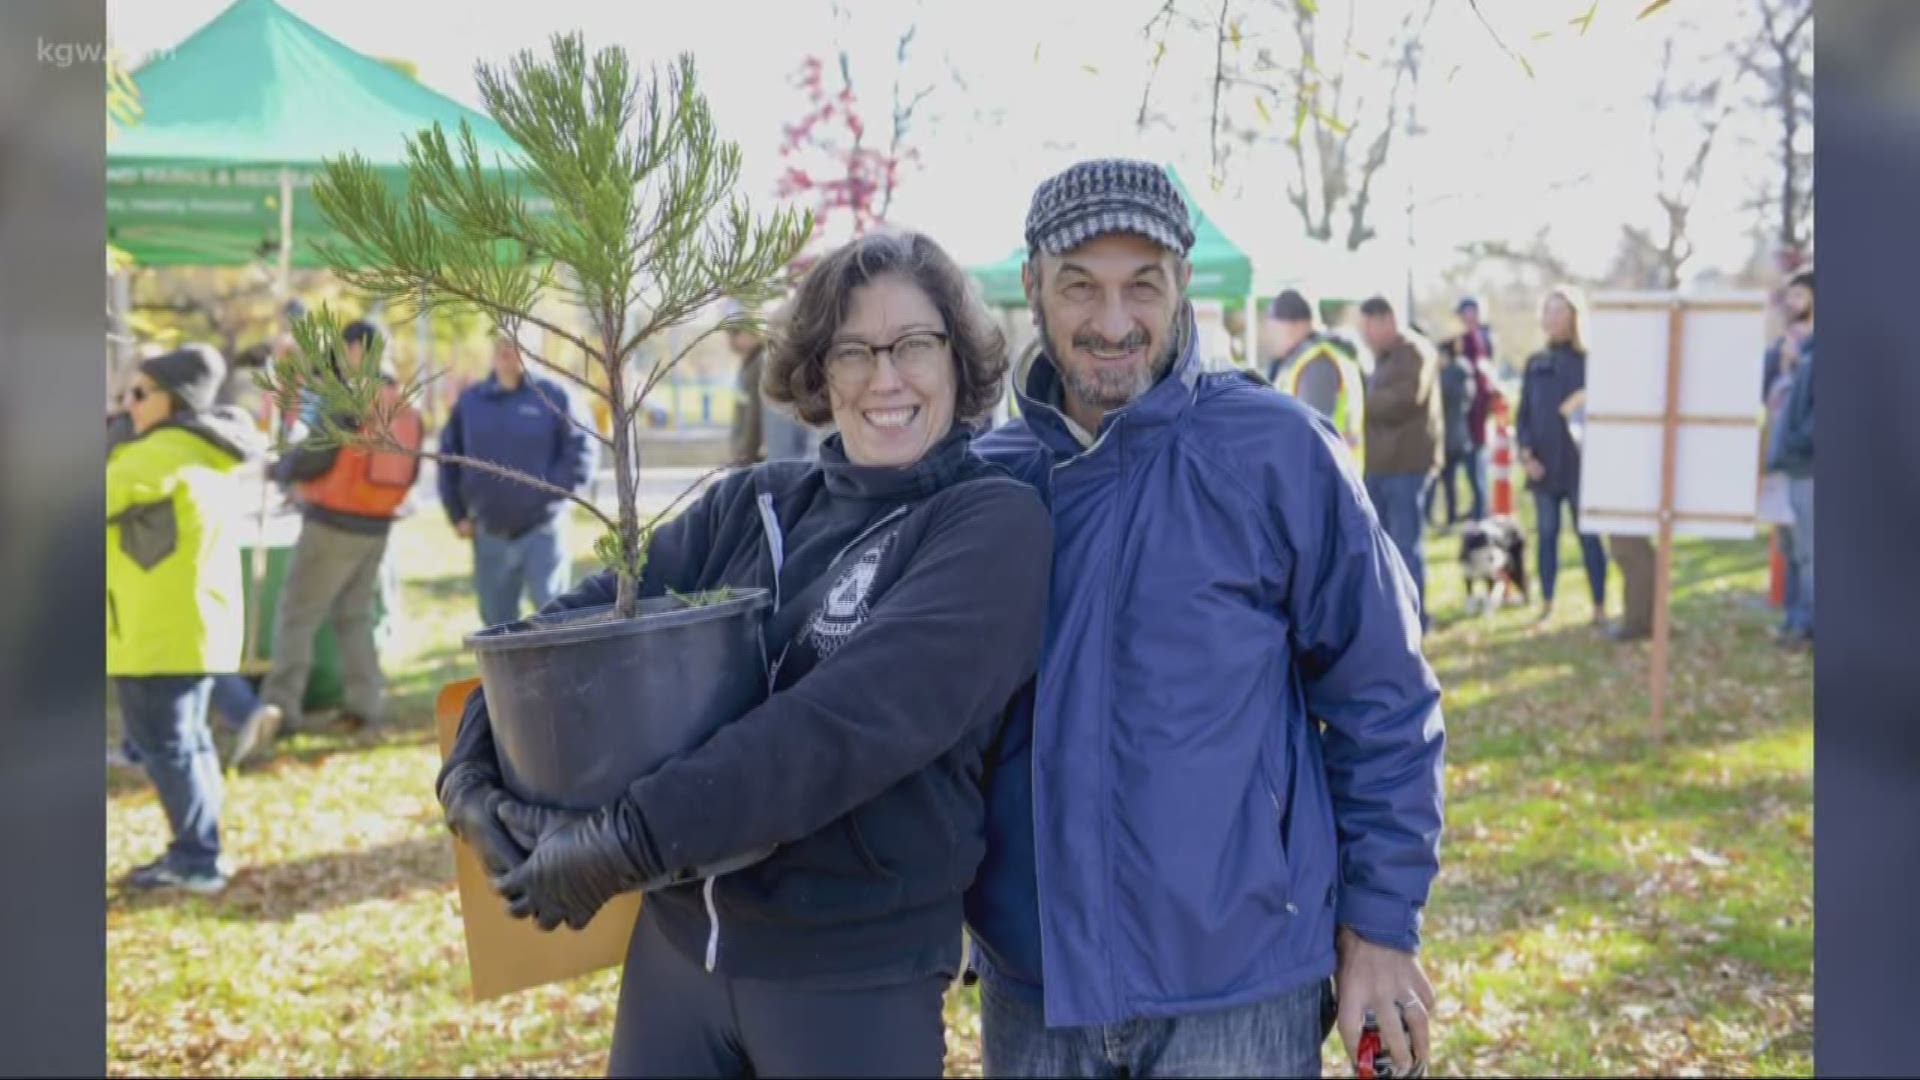 Program offers free trees to Portlanders